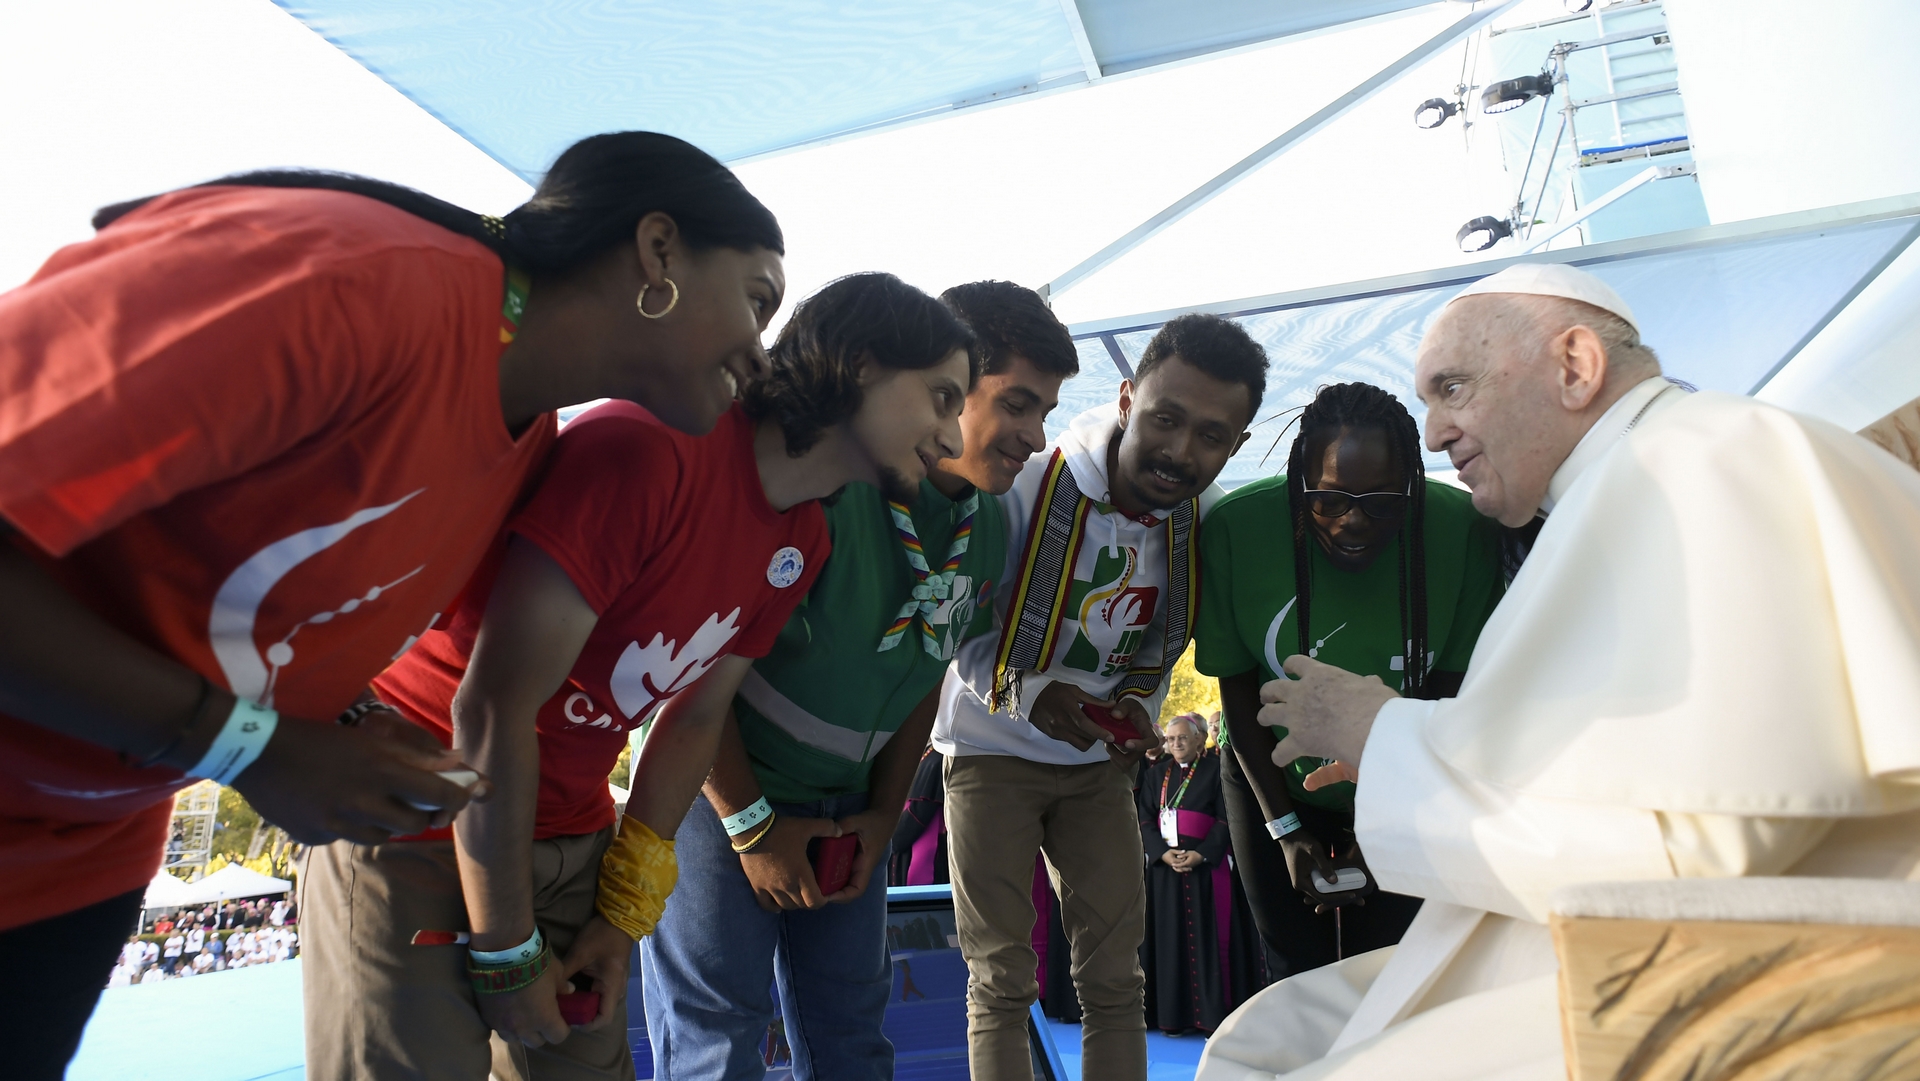 Le pape François aux jeunes: "Tu n'es pas un numéro, mais un visage" | © Vatican Media 